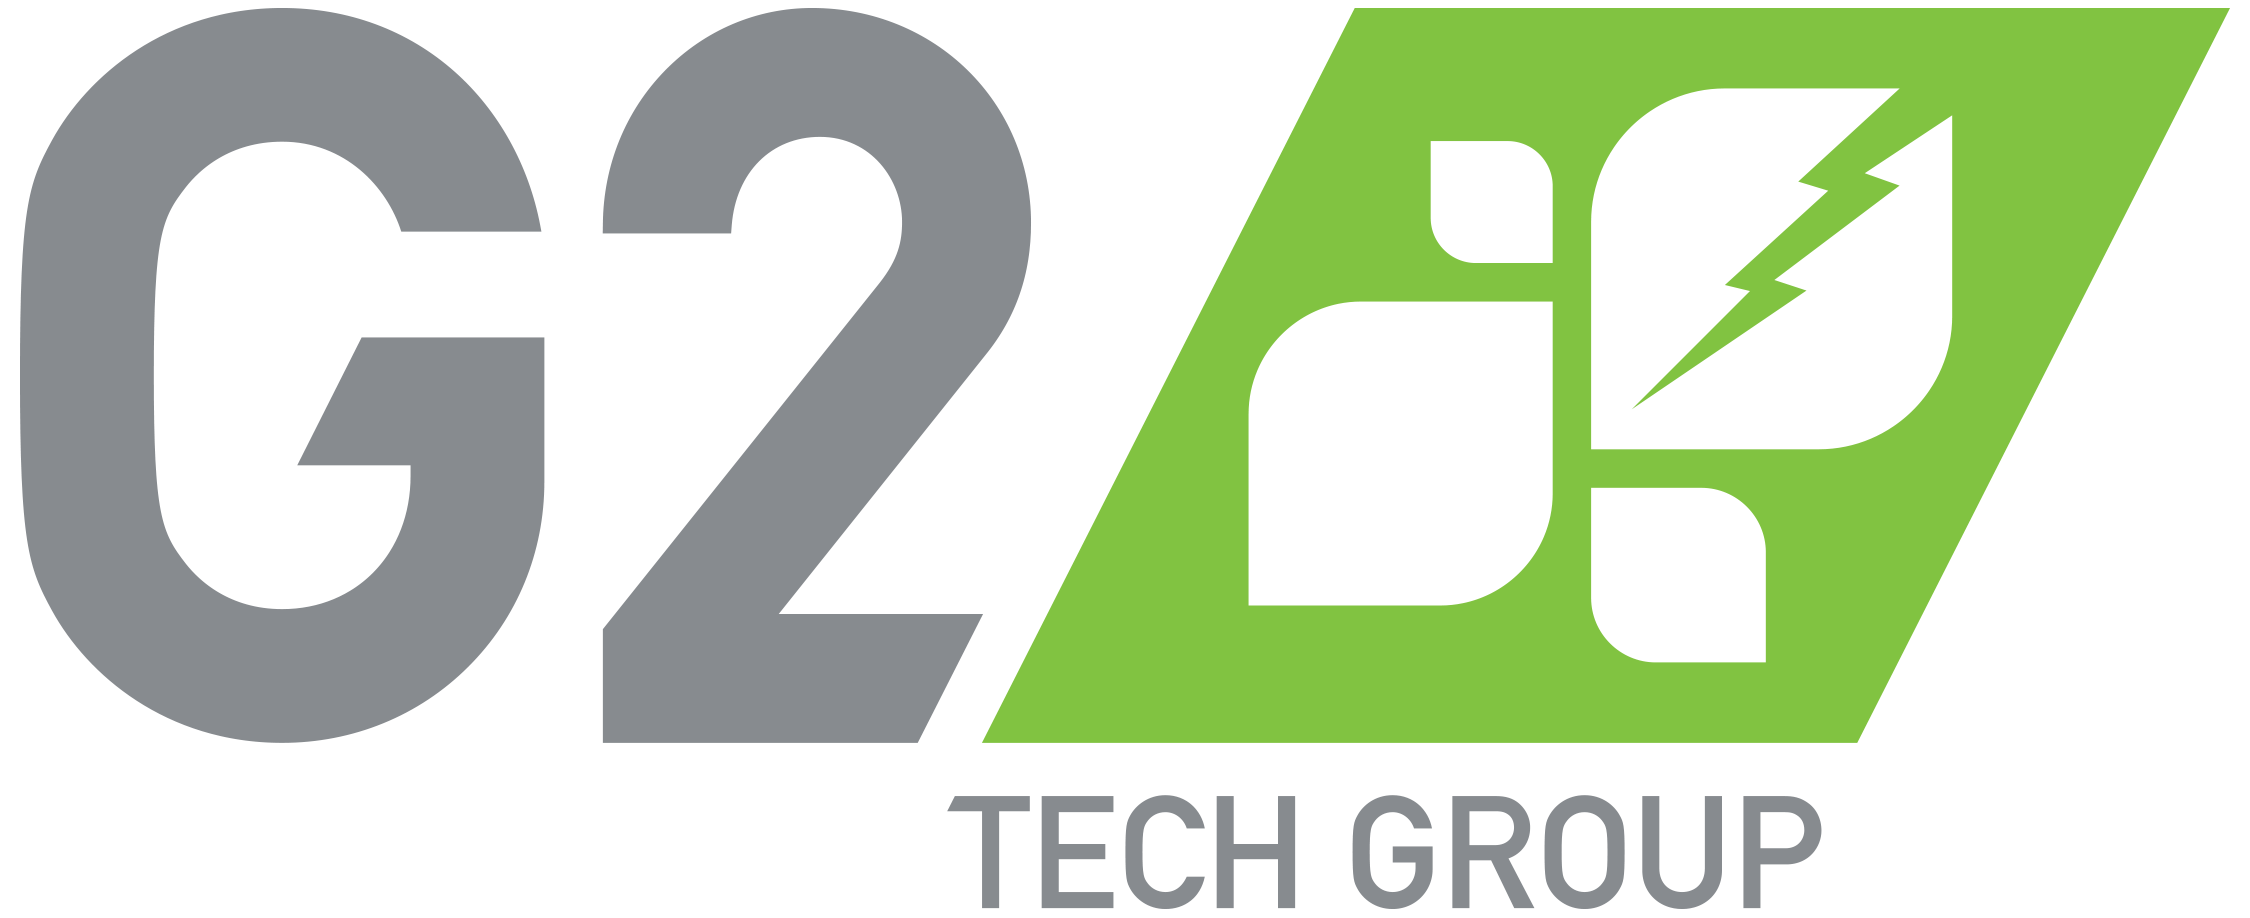 G2 Tech Group Announ